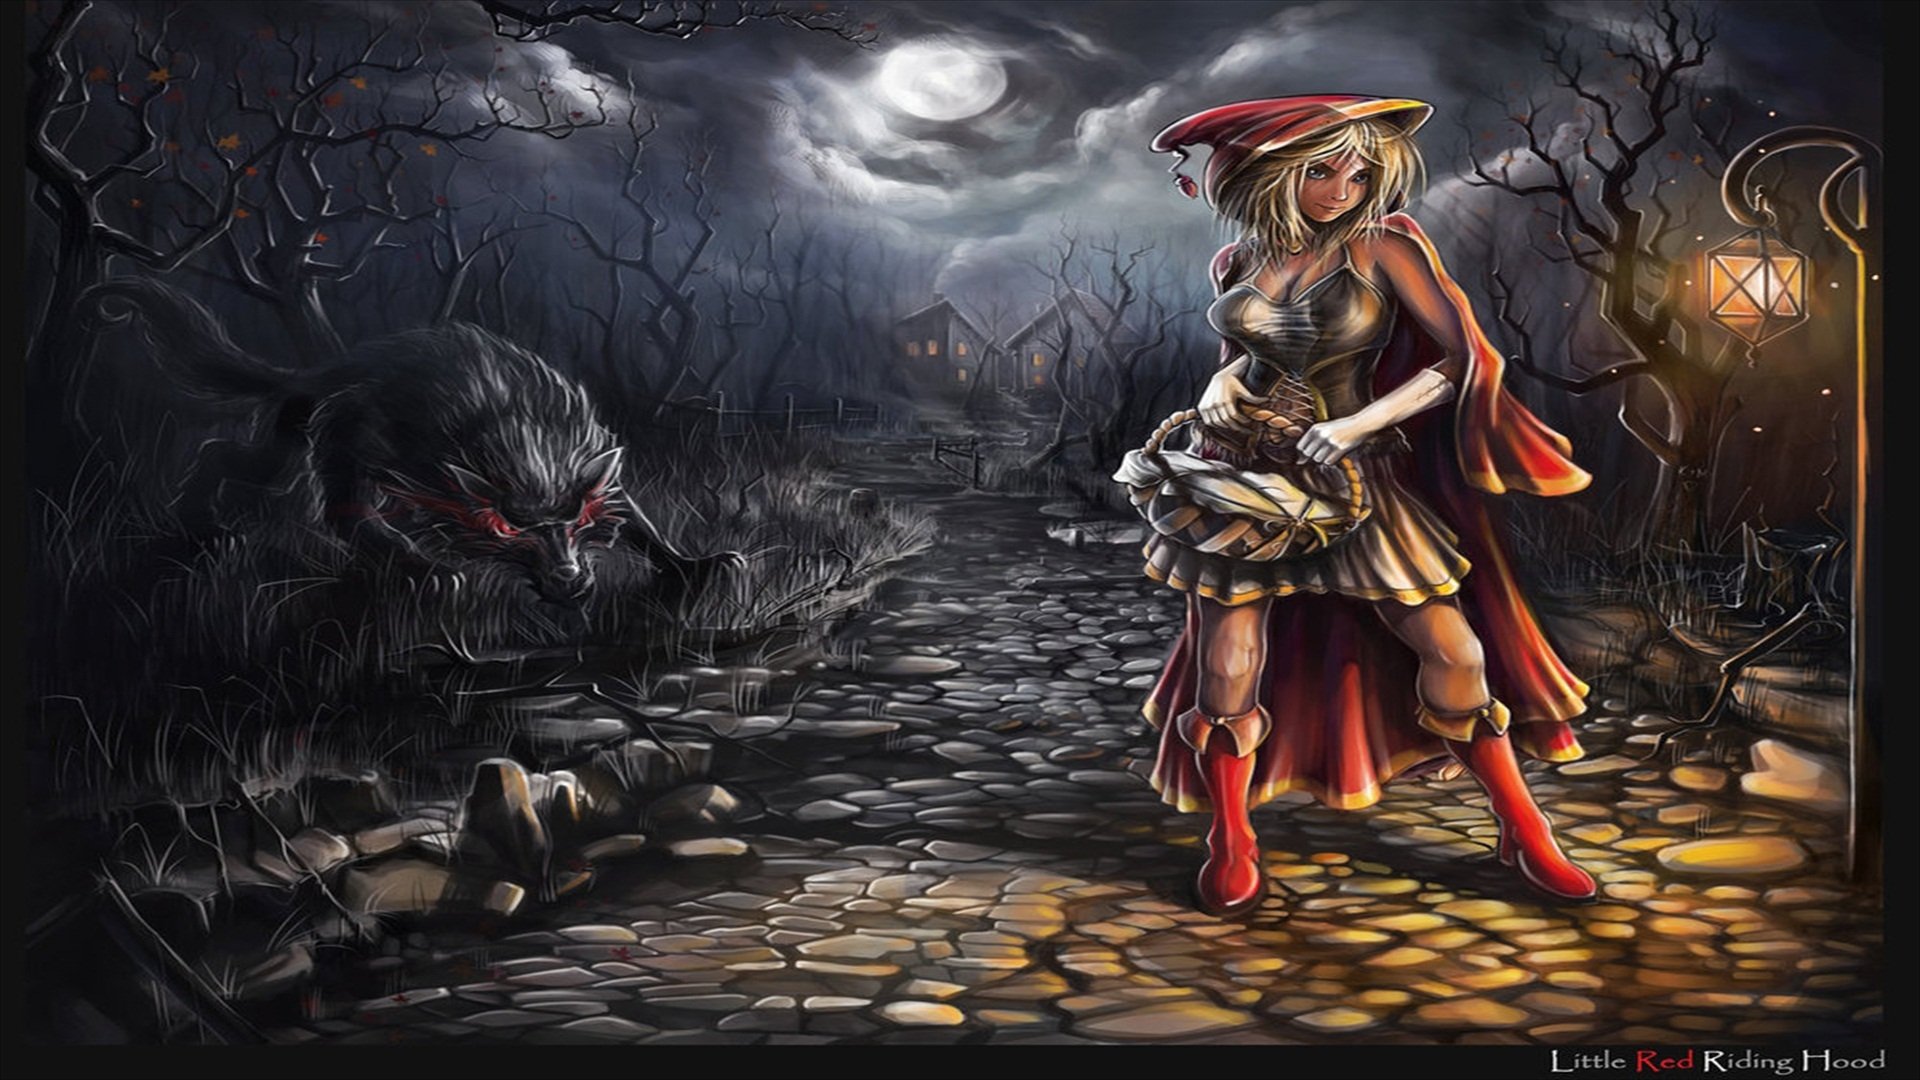 fondo de pantalla de caperucita roja,juego de acción y aventura,cg artwork,arte,oscuridad,mitología